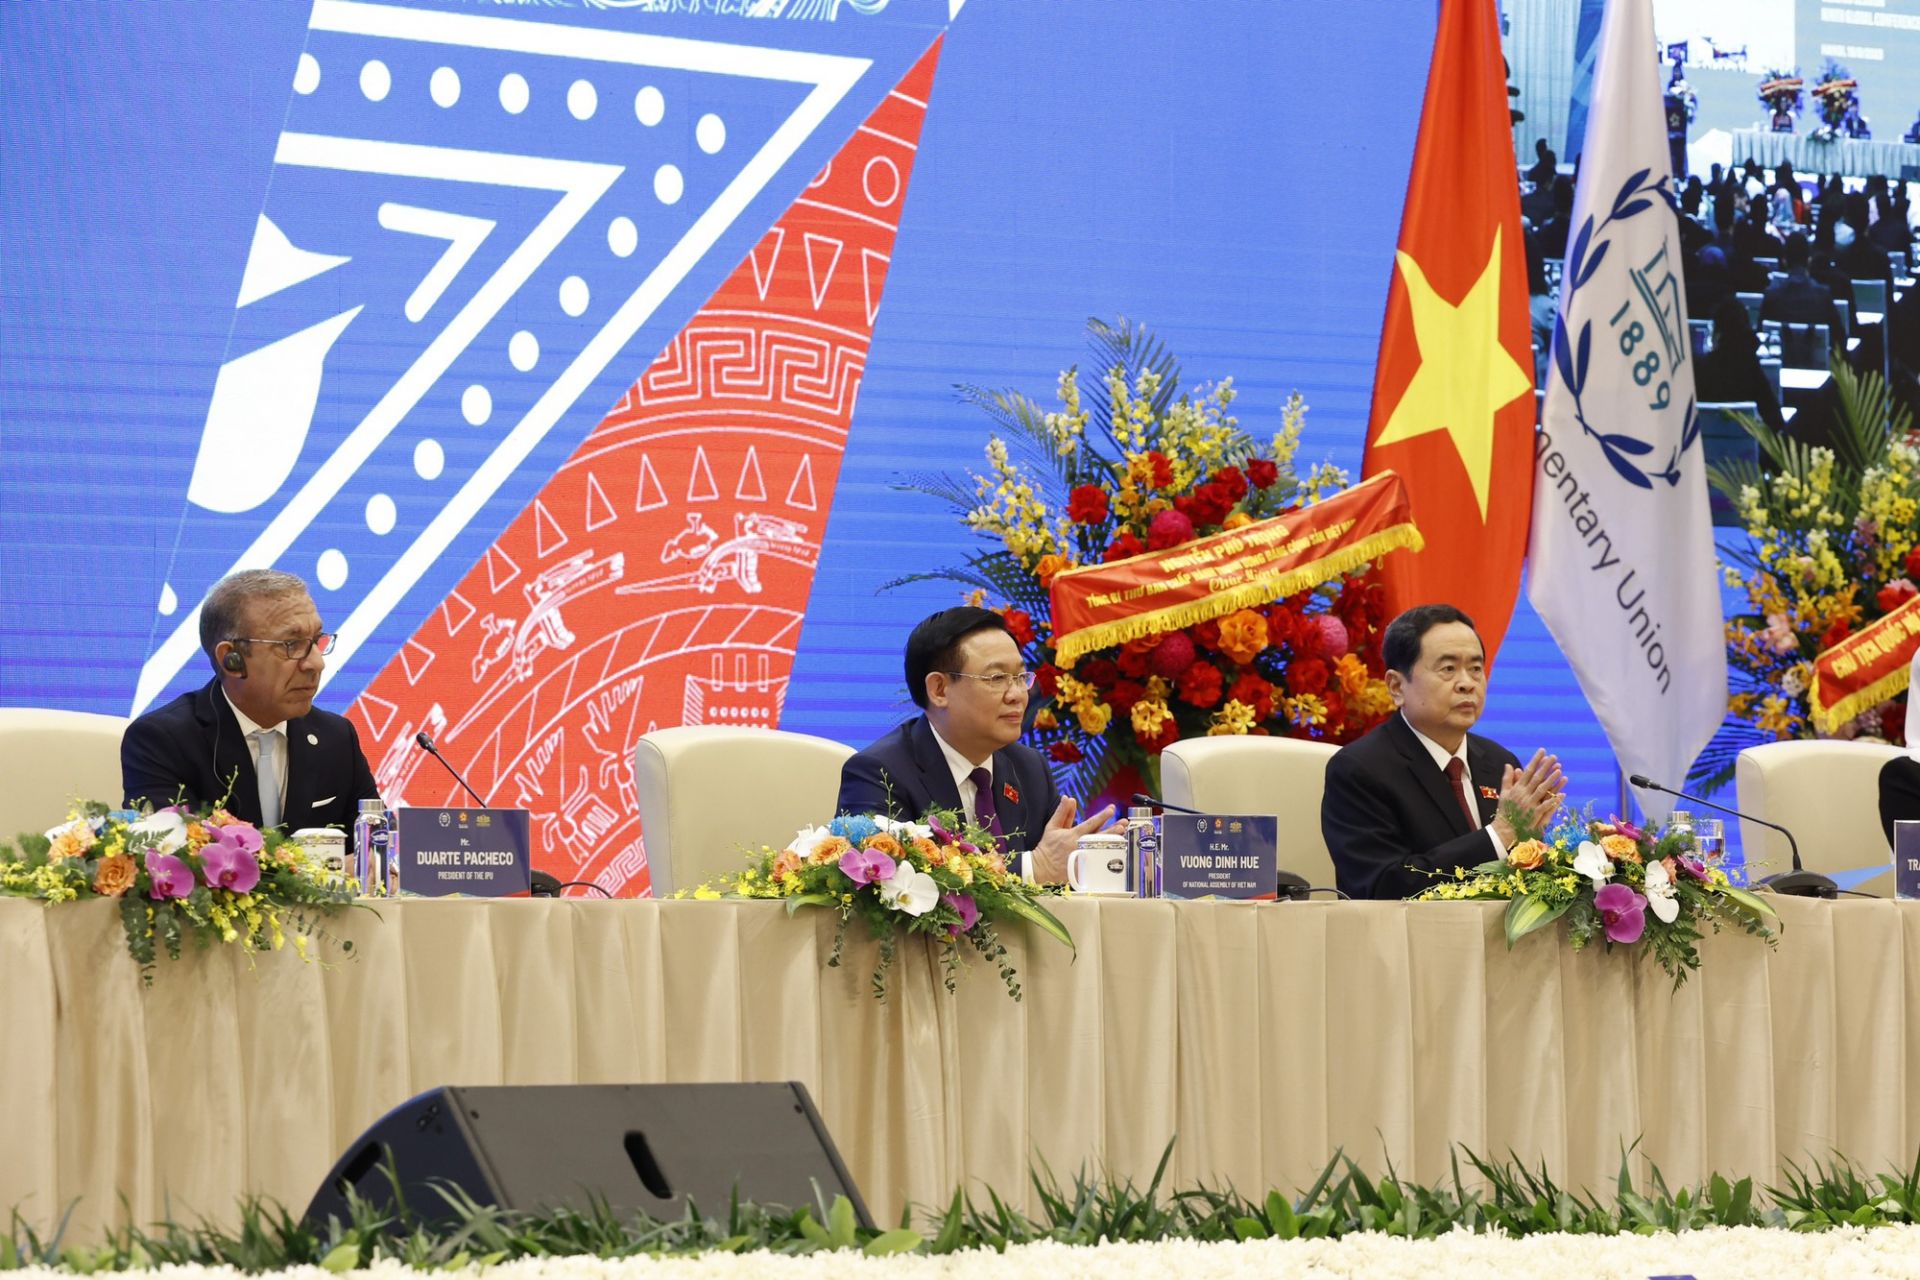 Tuyên bố Hội nghị Nghị sĩ trẻ toàn cầu lần thứ 9 tại Hà Nội - Ảnh 2.